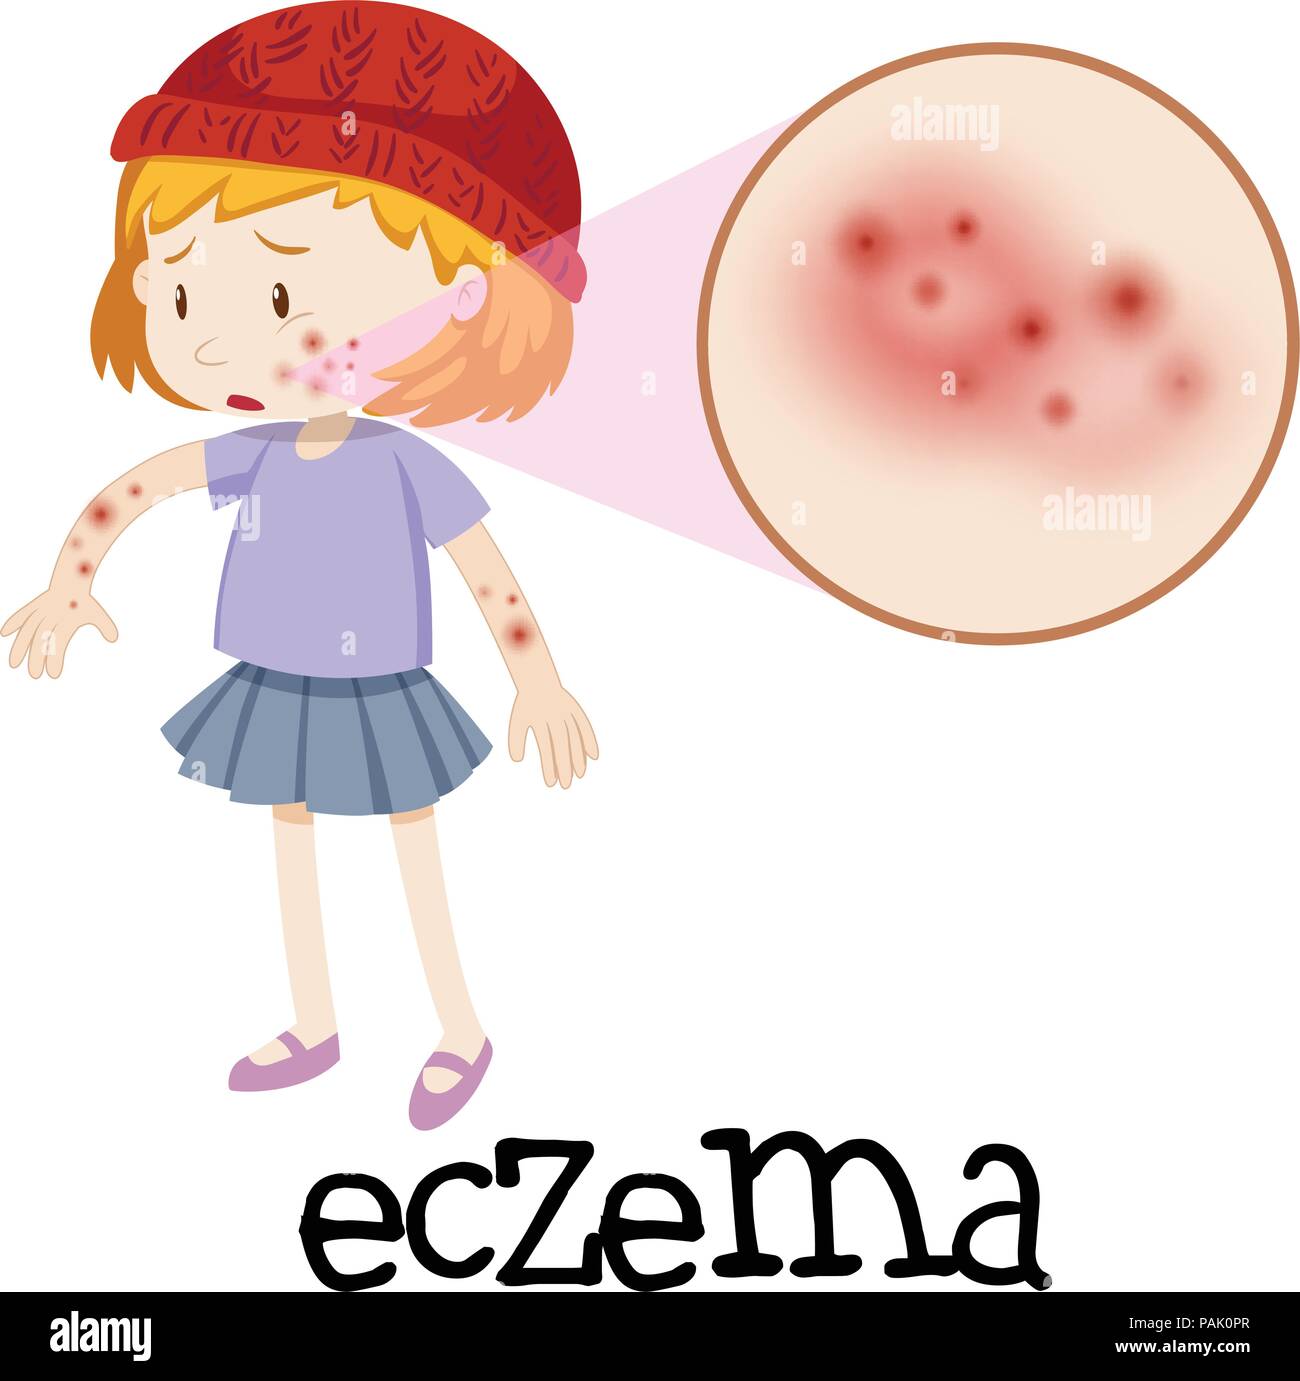 Jeune enfant avec l'eczéma illustration agrandie Illustration de Vecteur